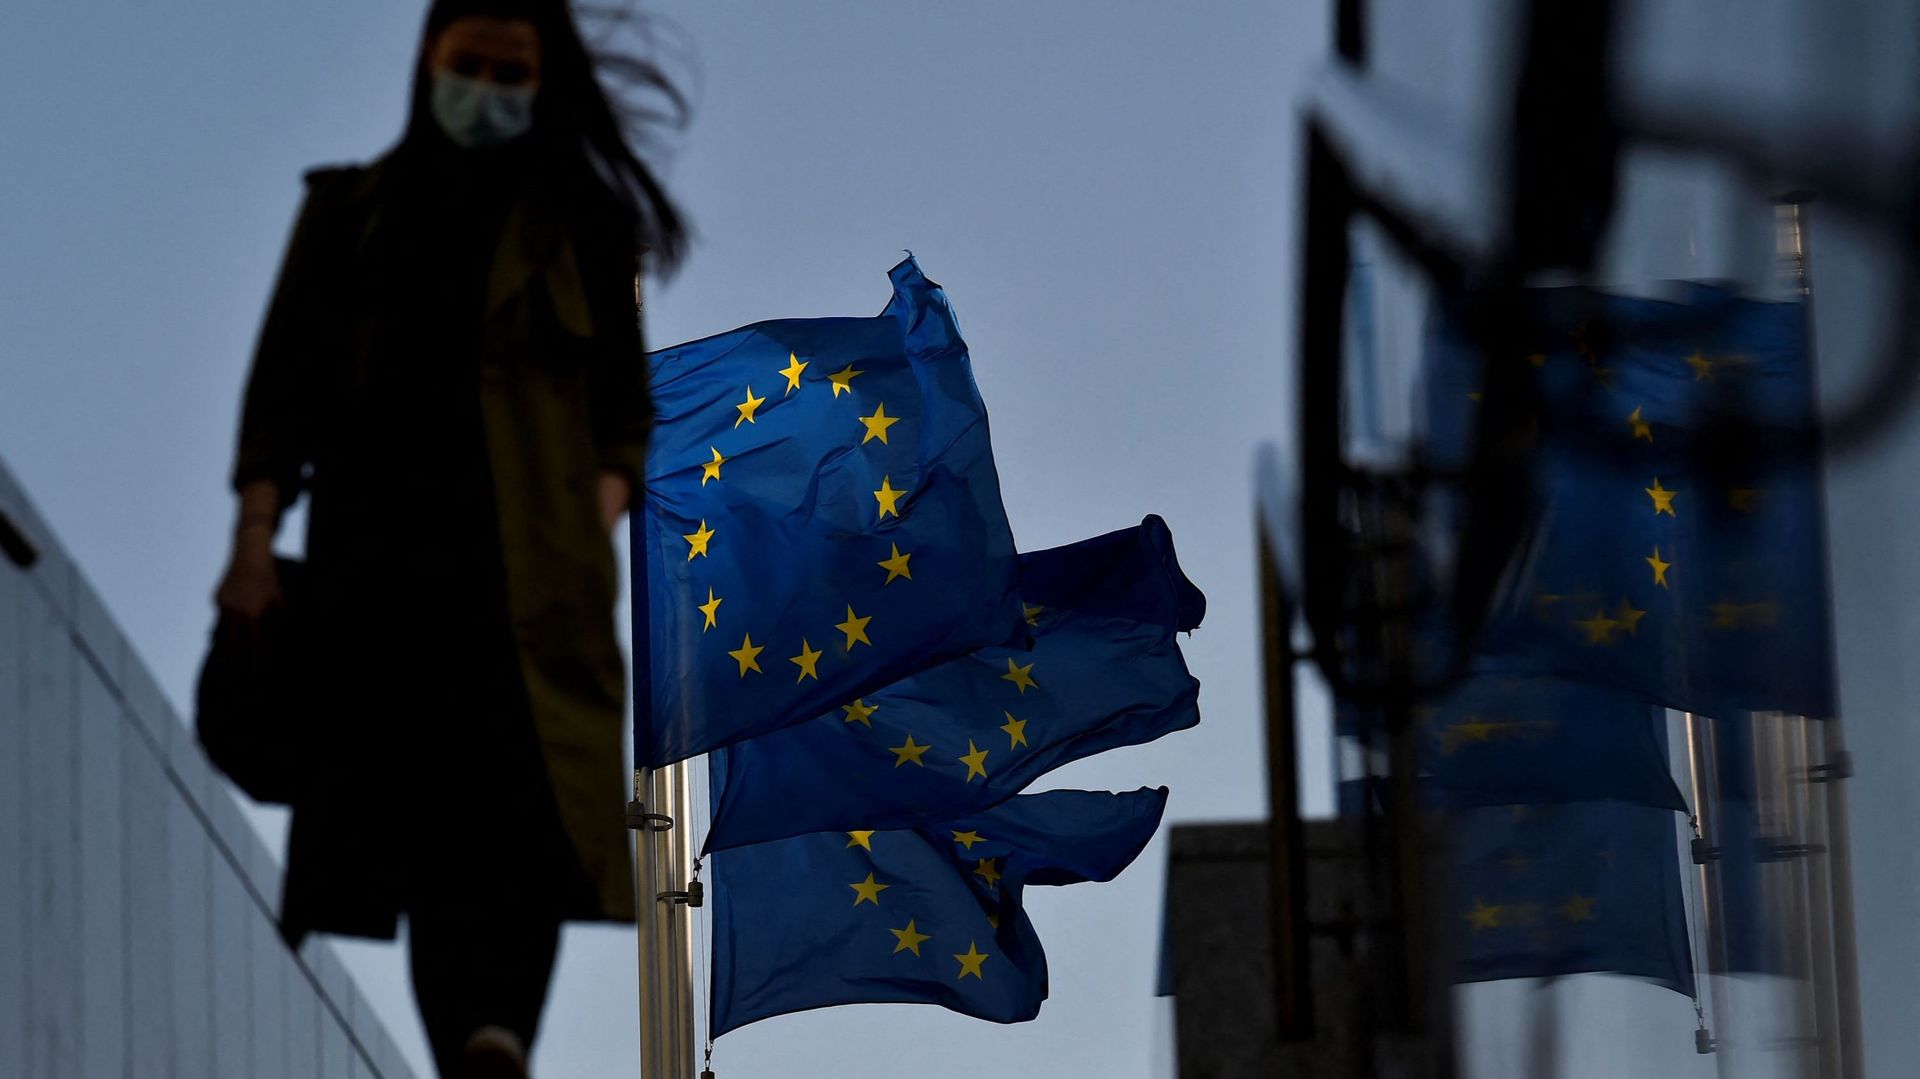 Passante masquée près des drapeaux européens à Bruxelles, le 23 février 2021 (illustration)